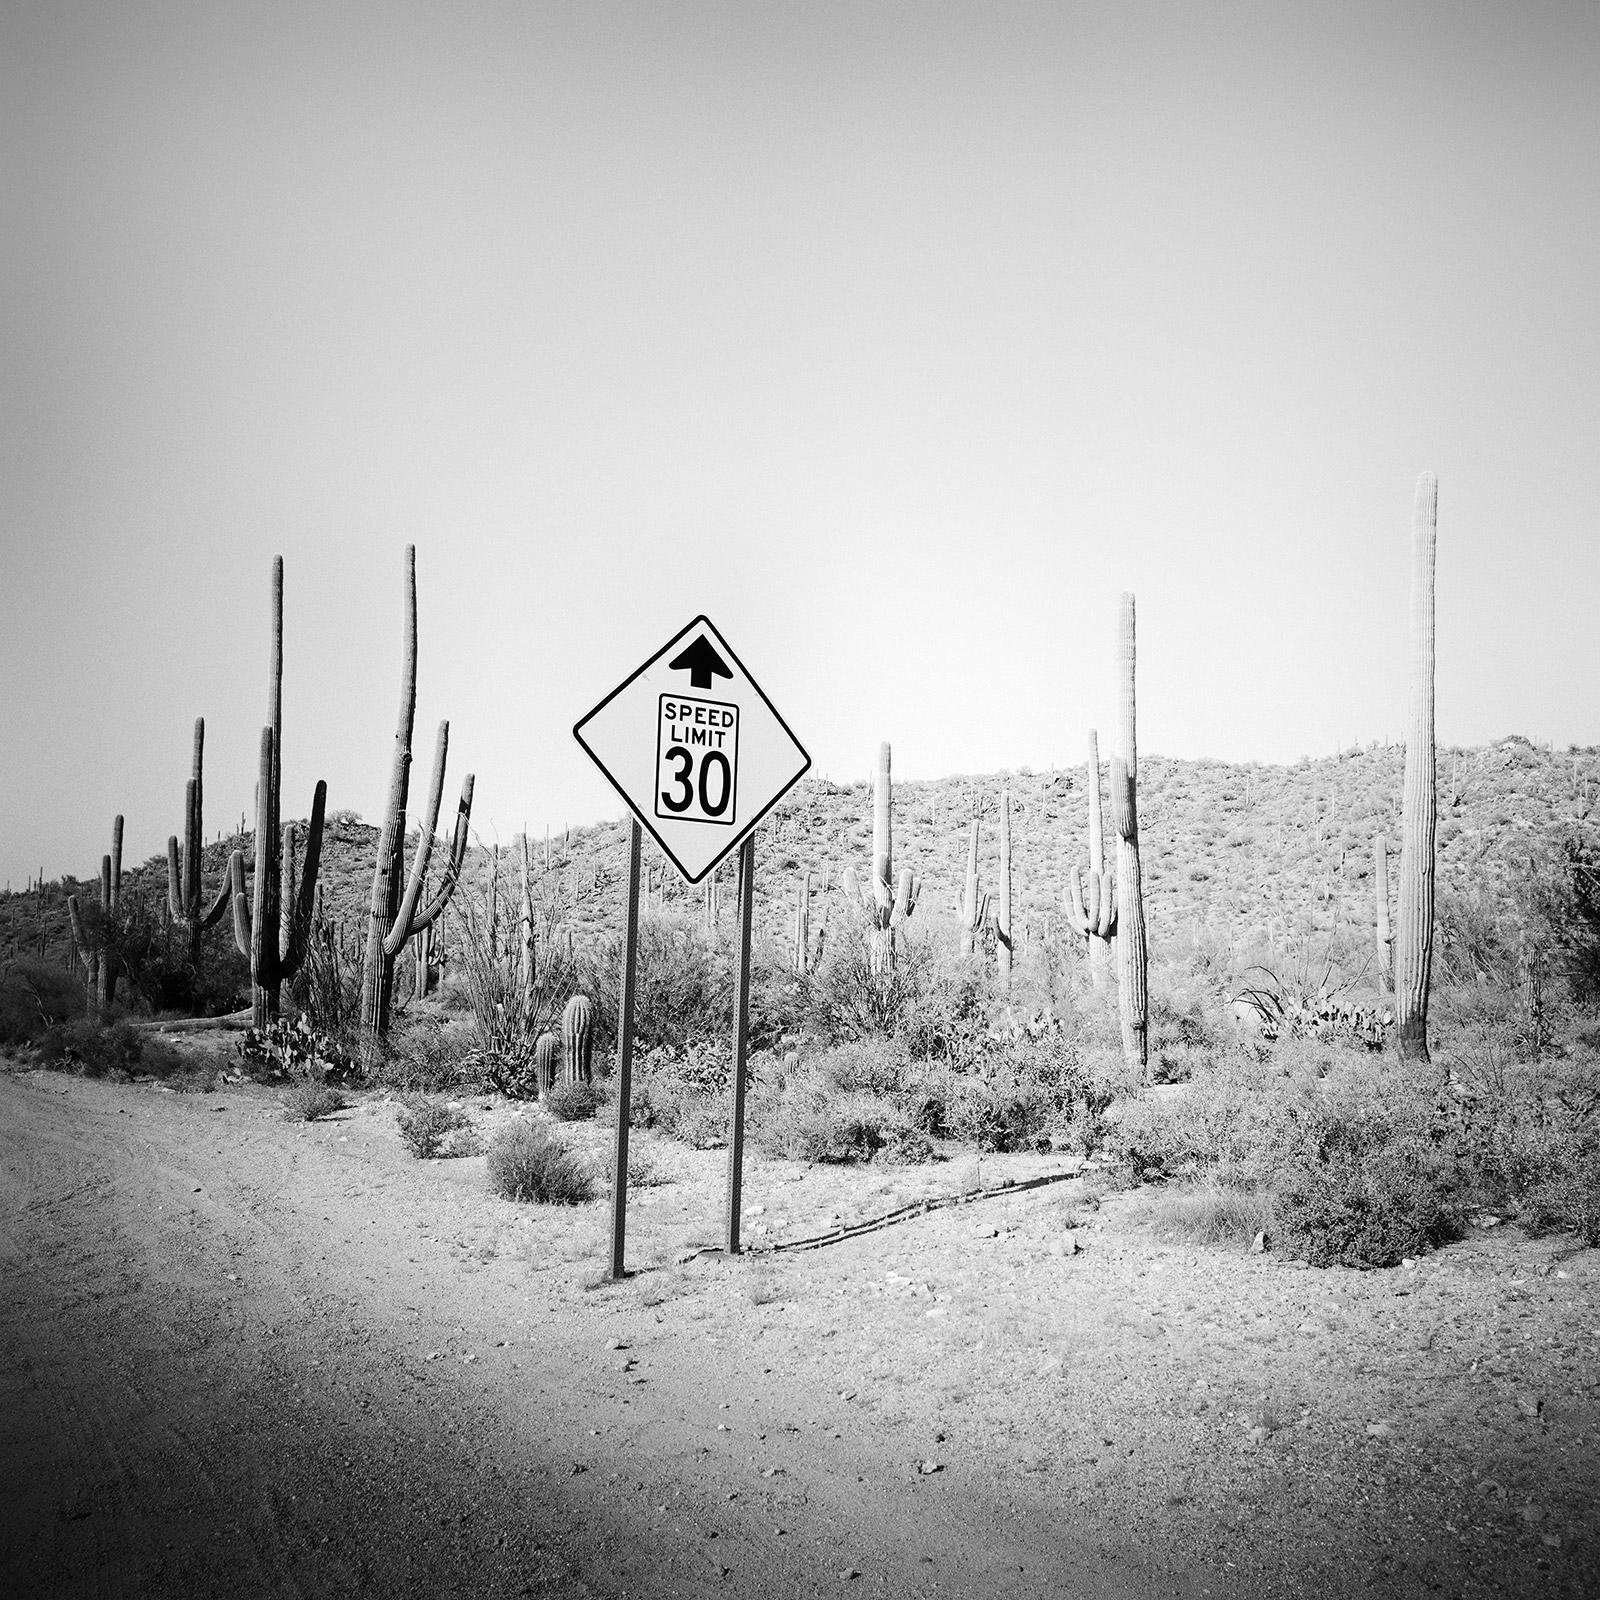 Black and White Photograph Gerald Berghammer - Limite de vitesse, désert, cactus, Arizona, photographie de paysage artistique en noir et blanc